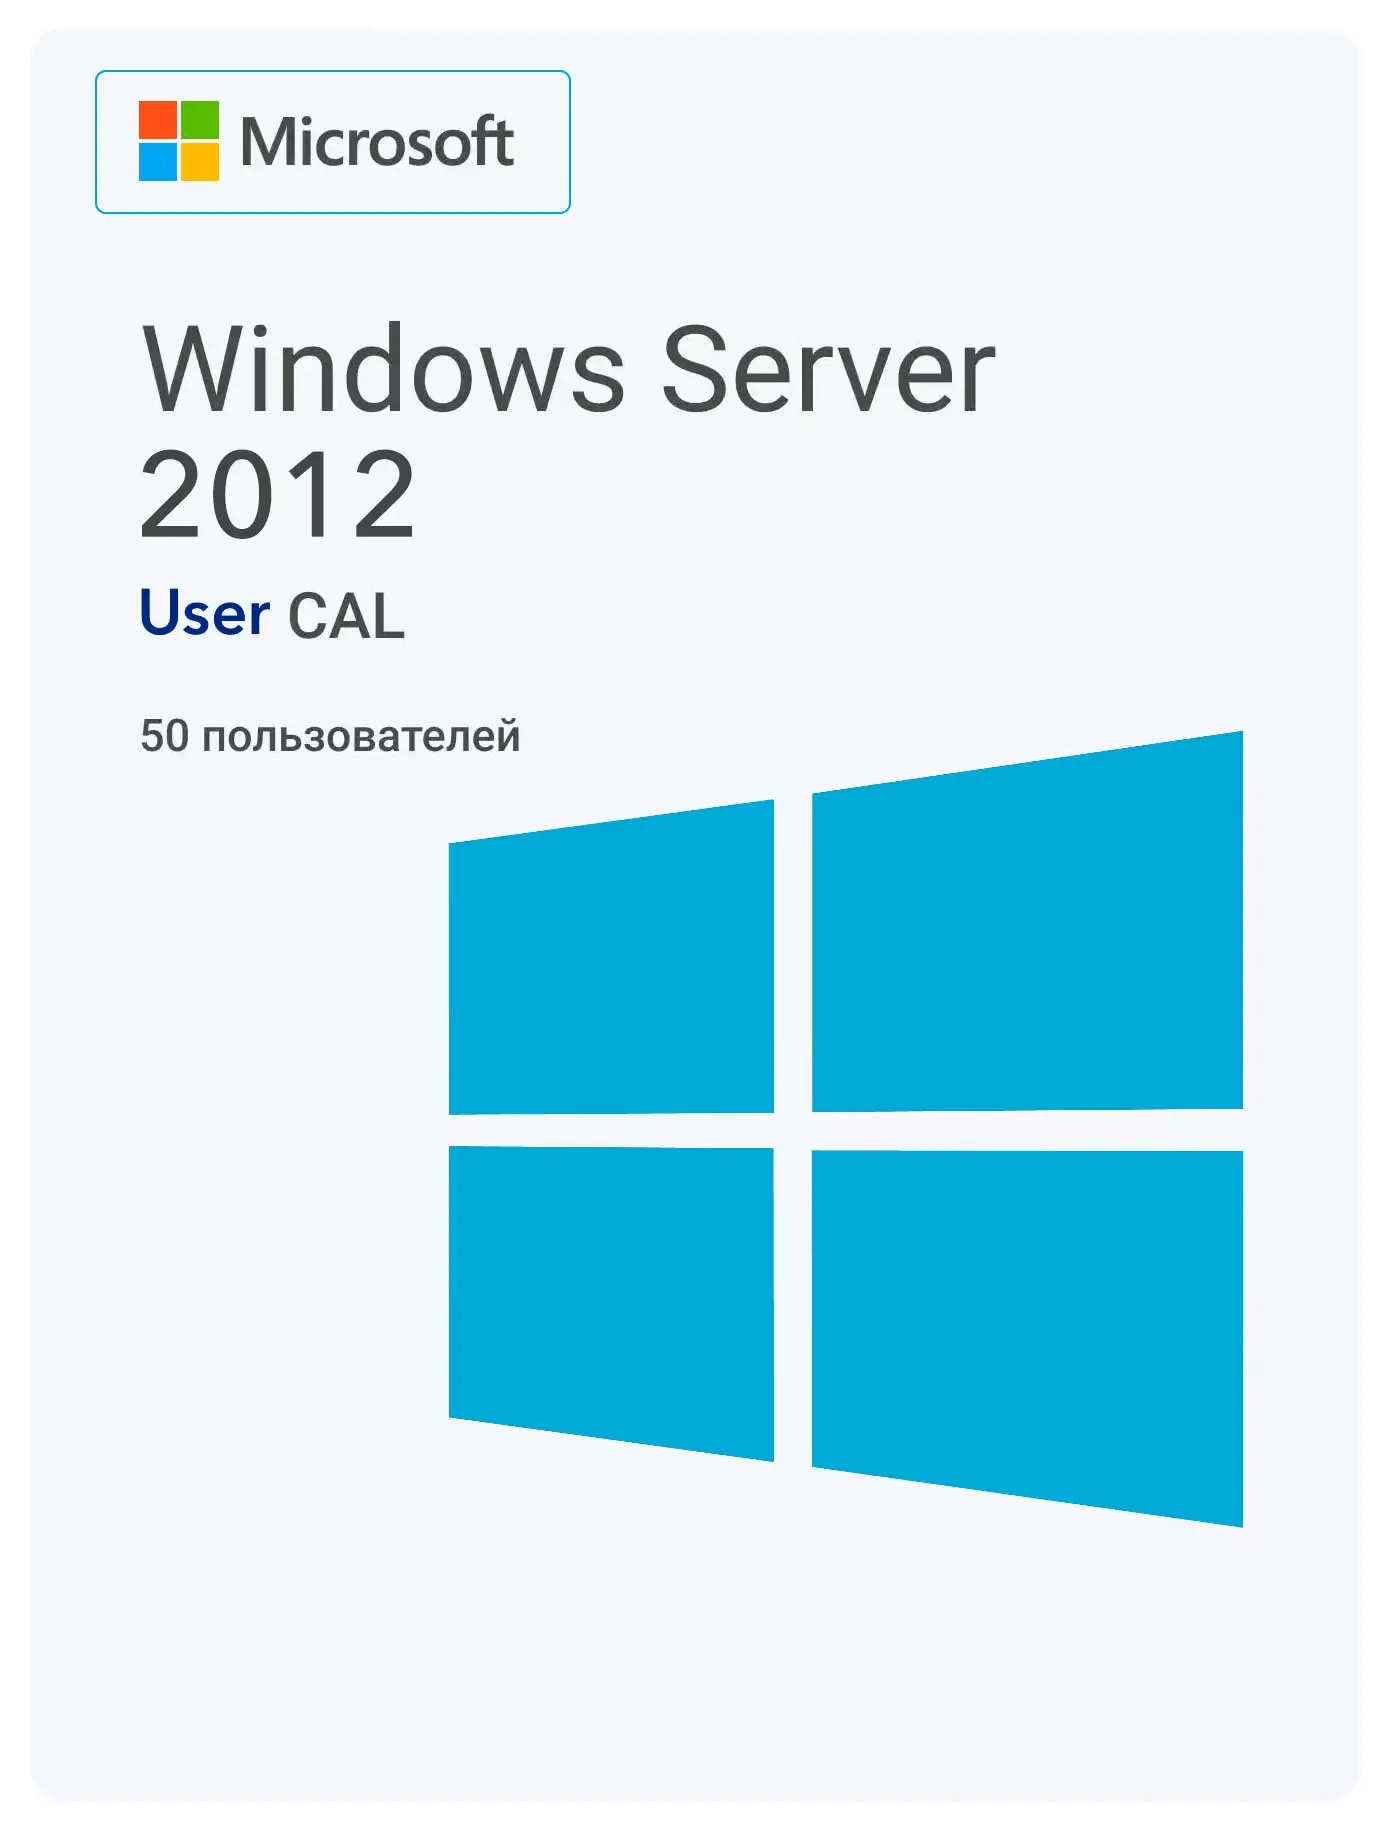 Windows Server 2012 RDS User CAL (50 User)